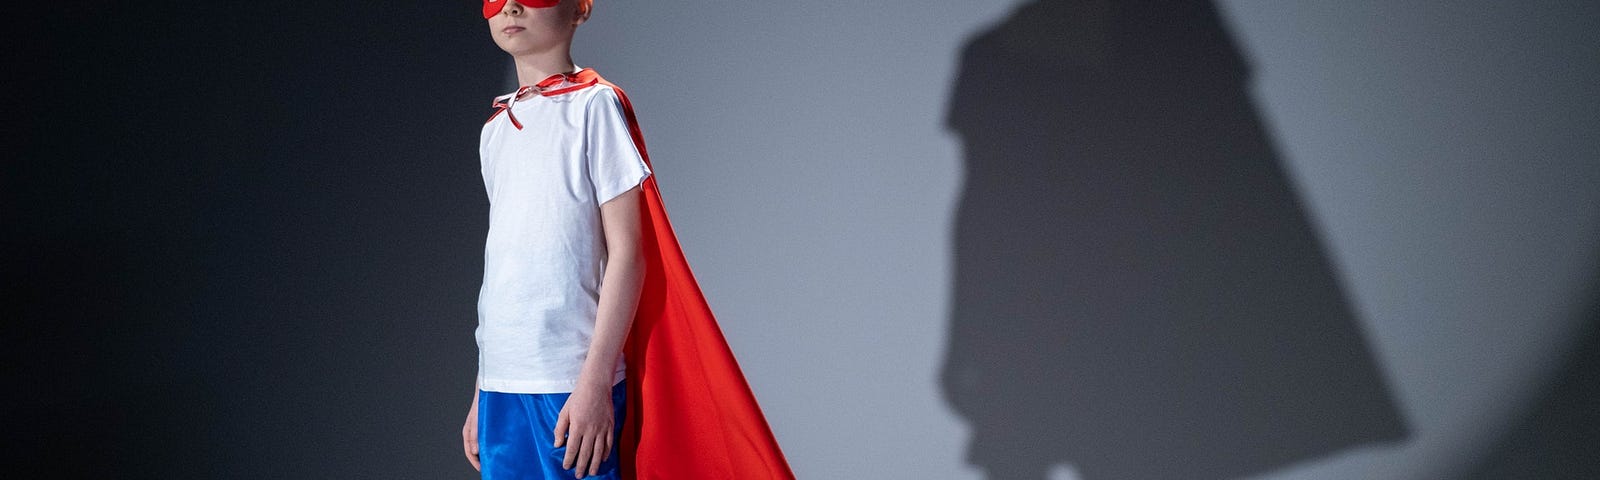 Child in superhero costume